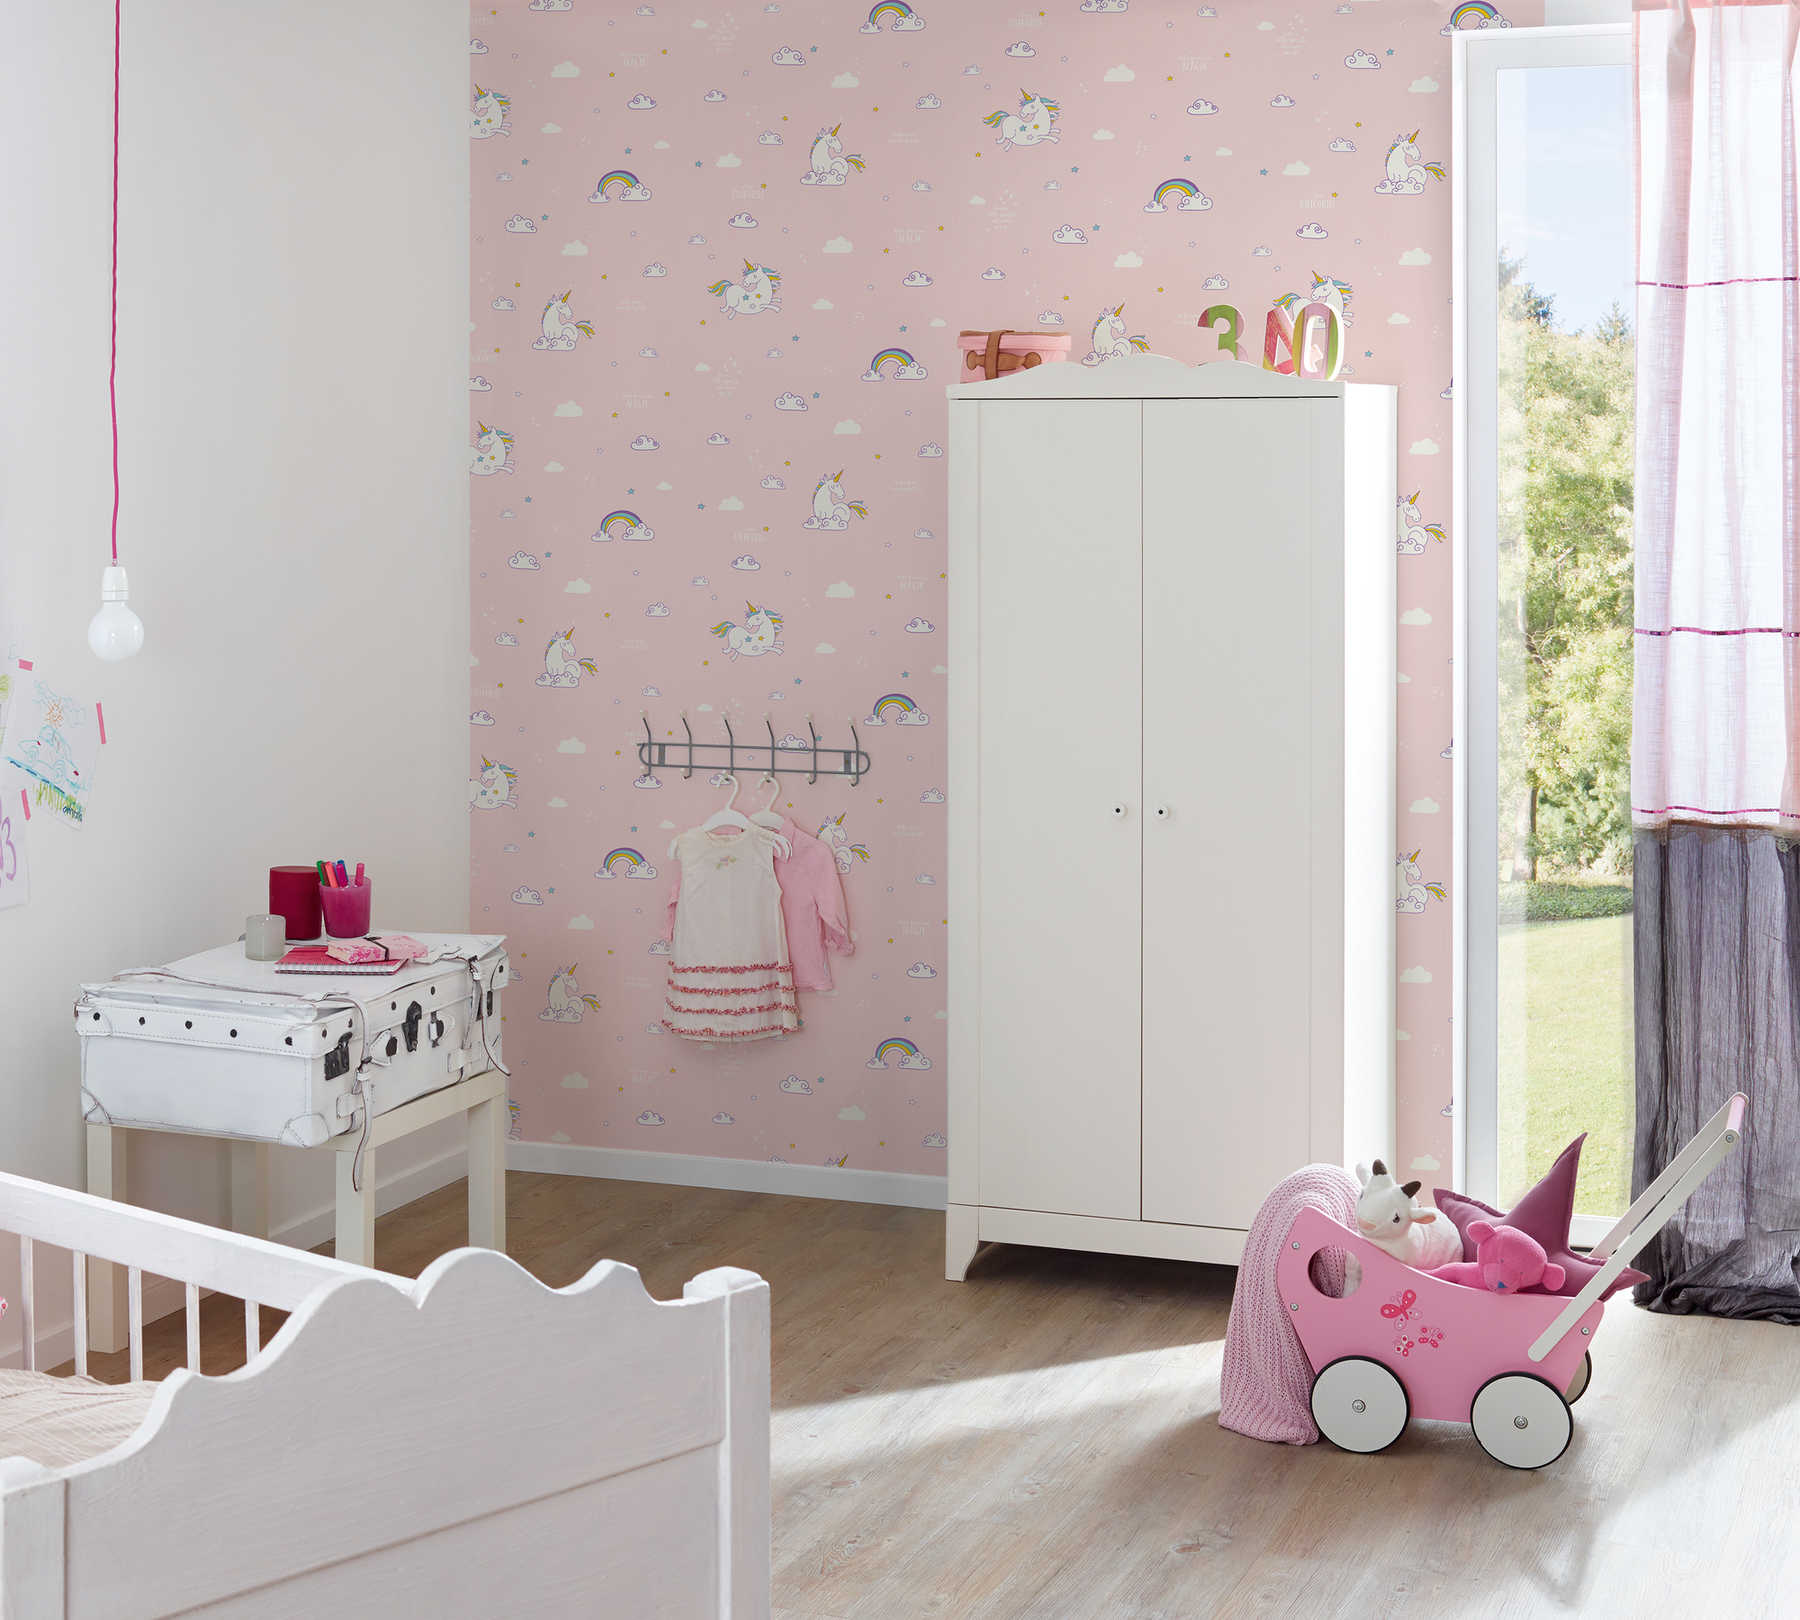             Papel pintado de unicornio rosa para la habitación de los niños - rosa, amarillo
        